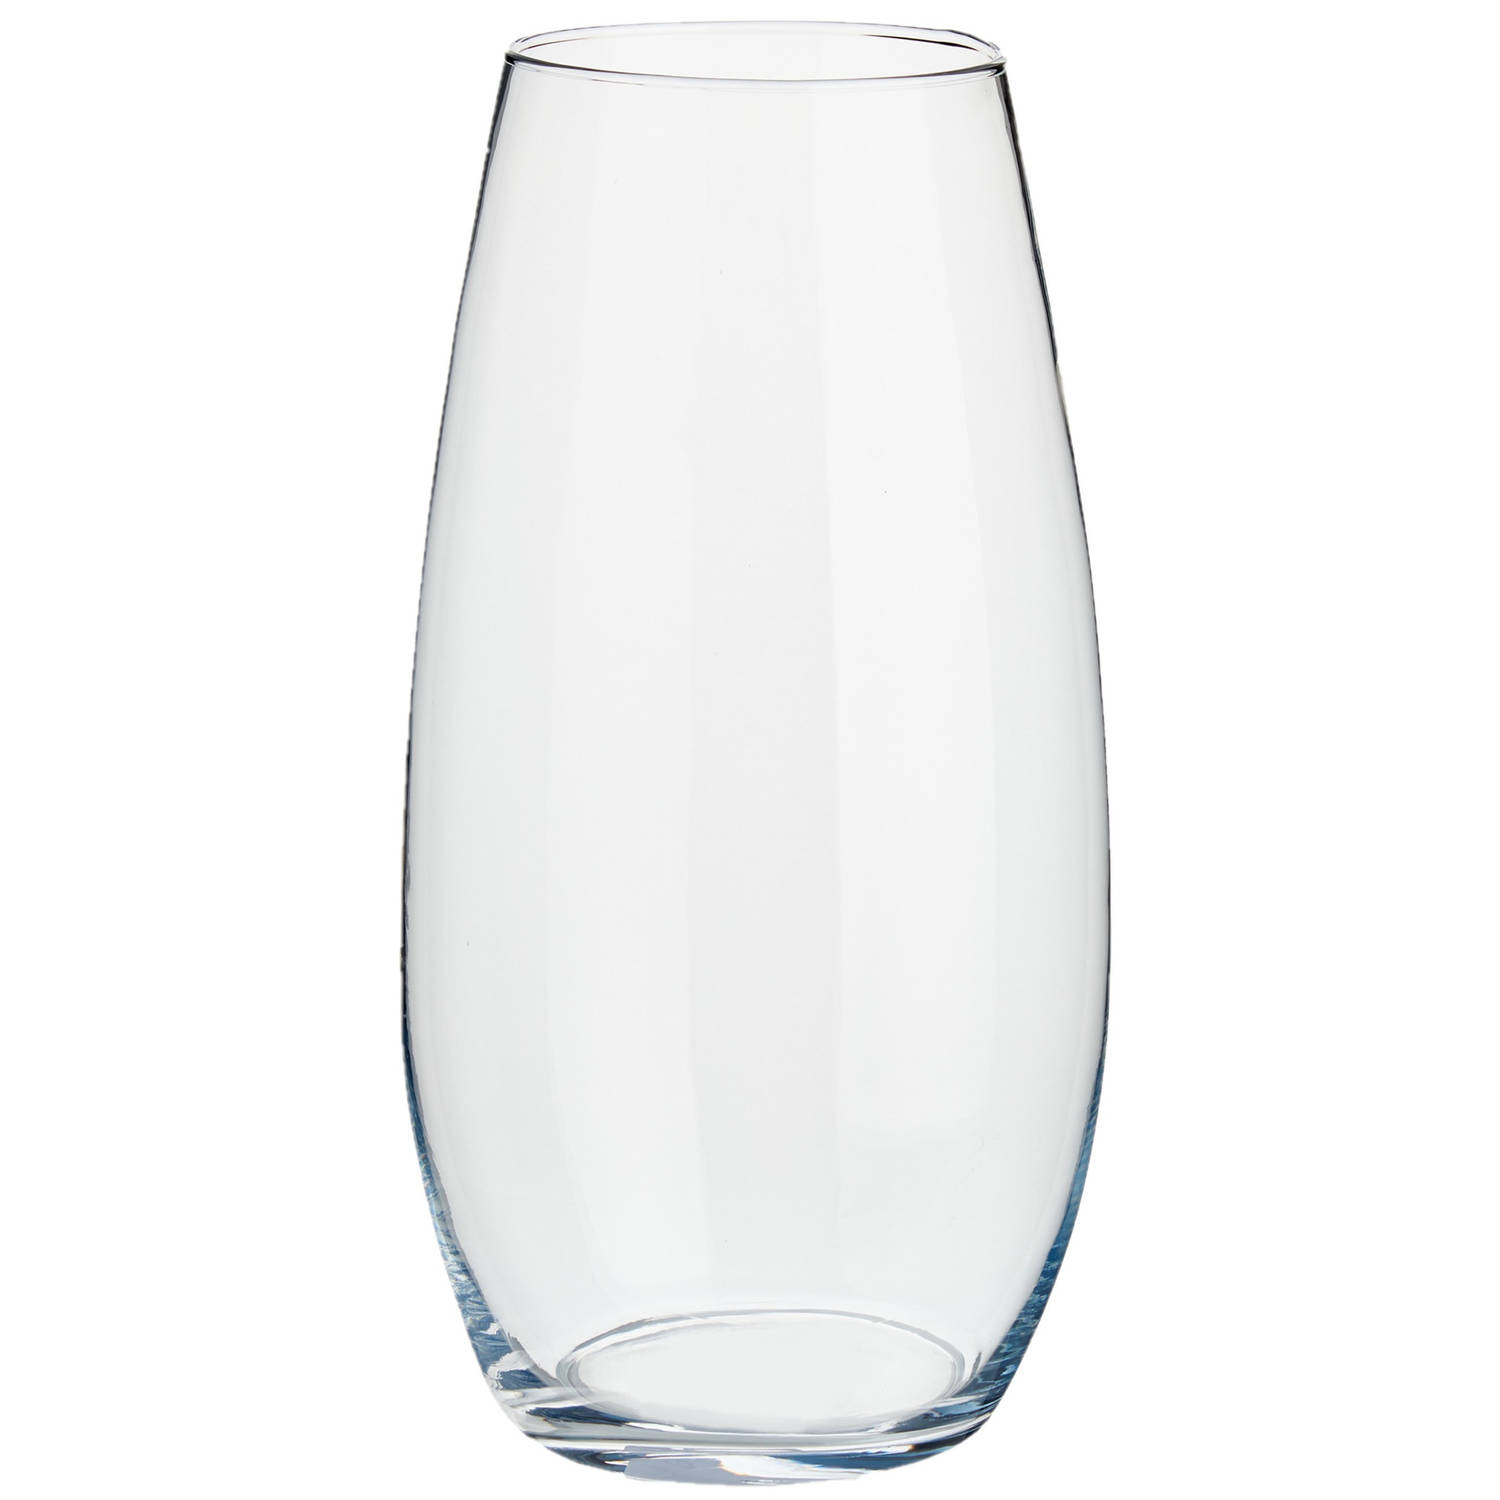 Bloemenvaas van glas 19 x 35 cm - Vazen